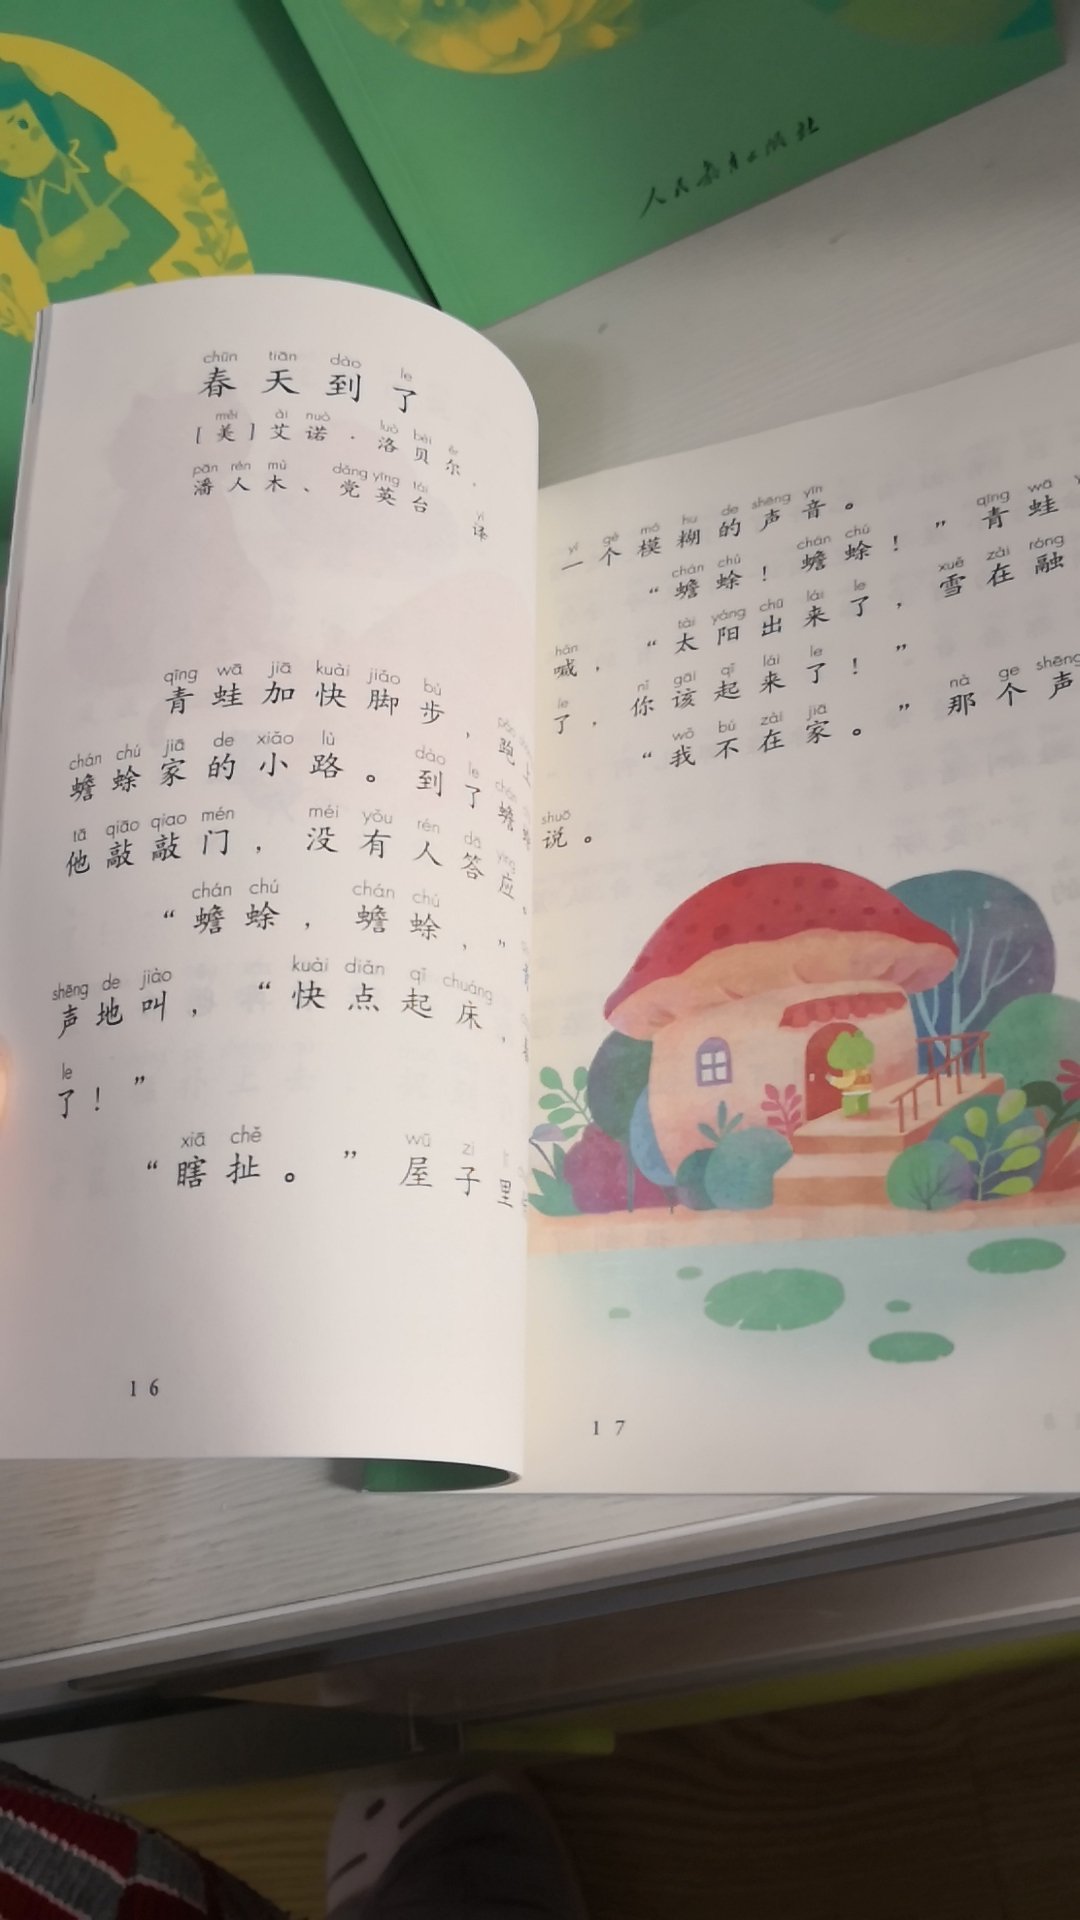 彩页并且有拼音，适合让孩子每天读一篇，向无拼音书过度，很喜欢！